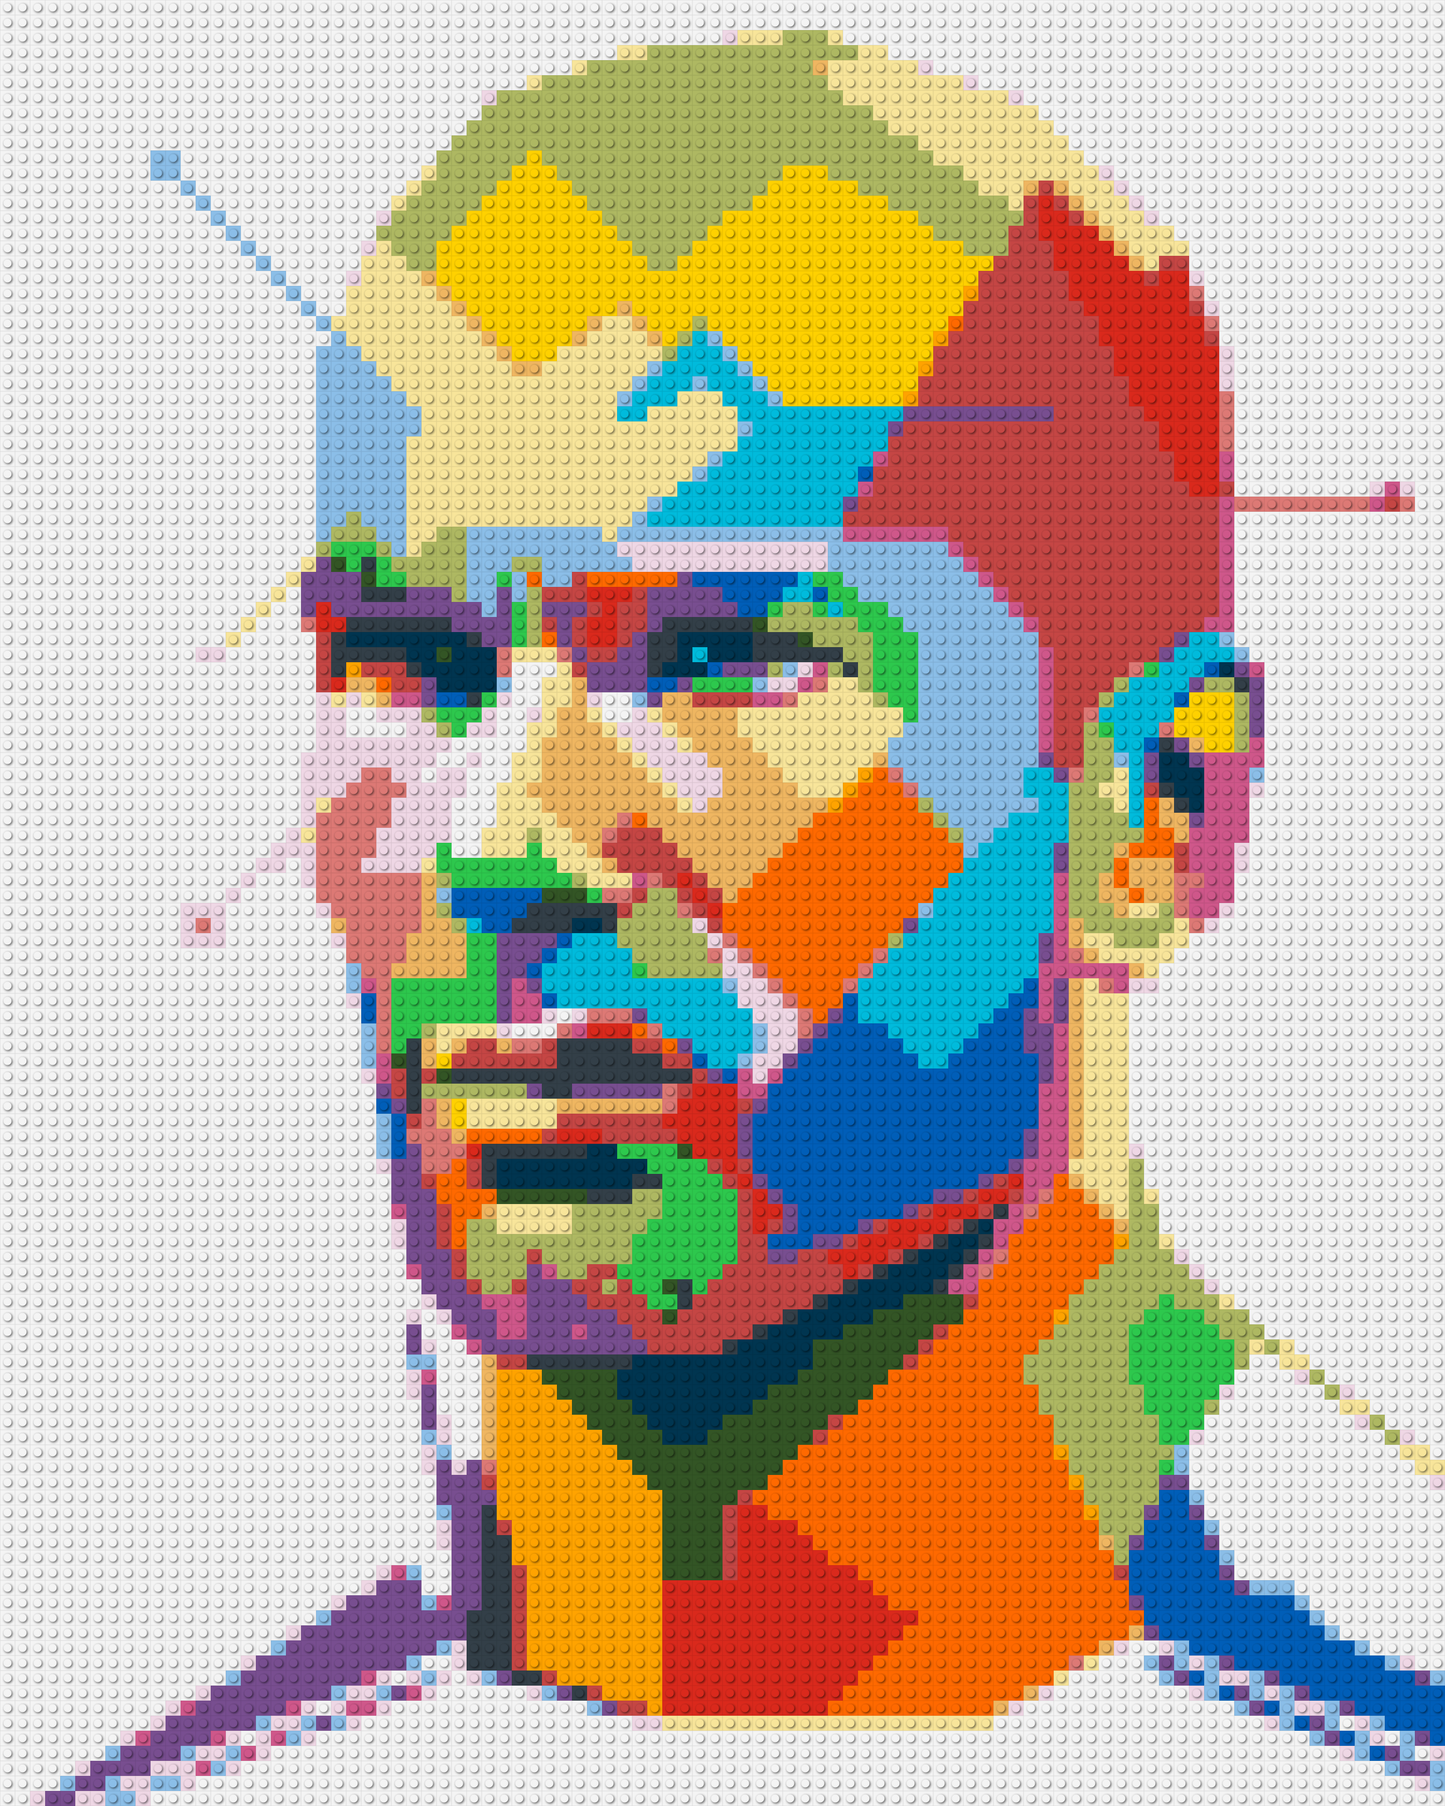 Zidane - Brick Art Mosaic Kit